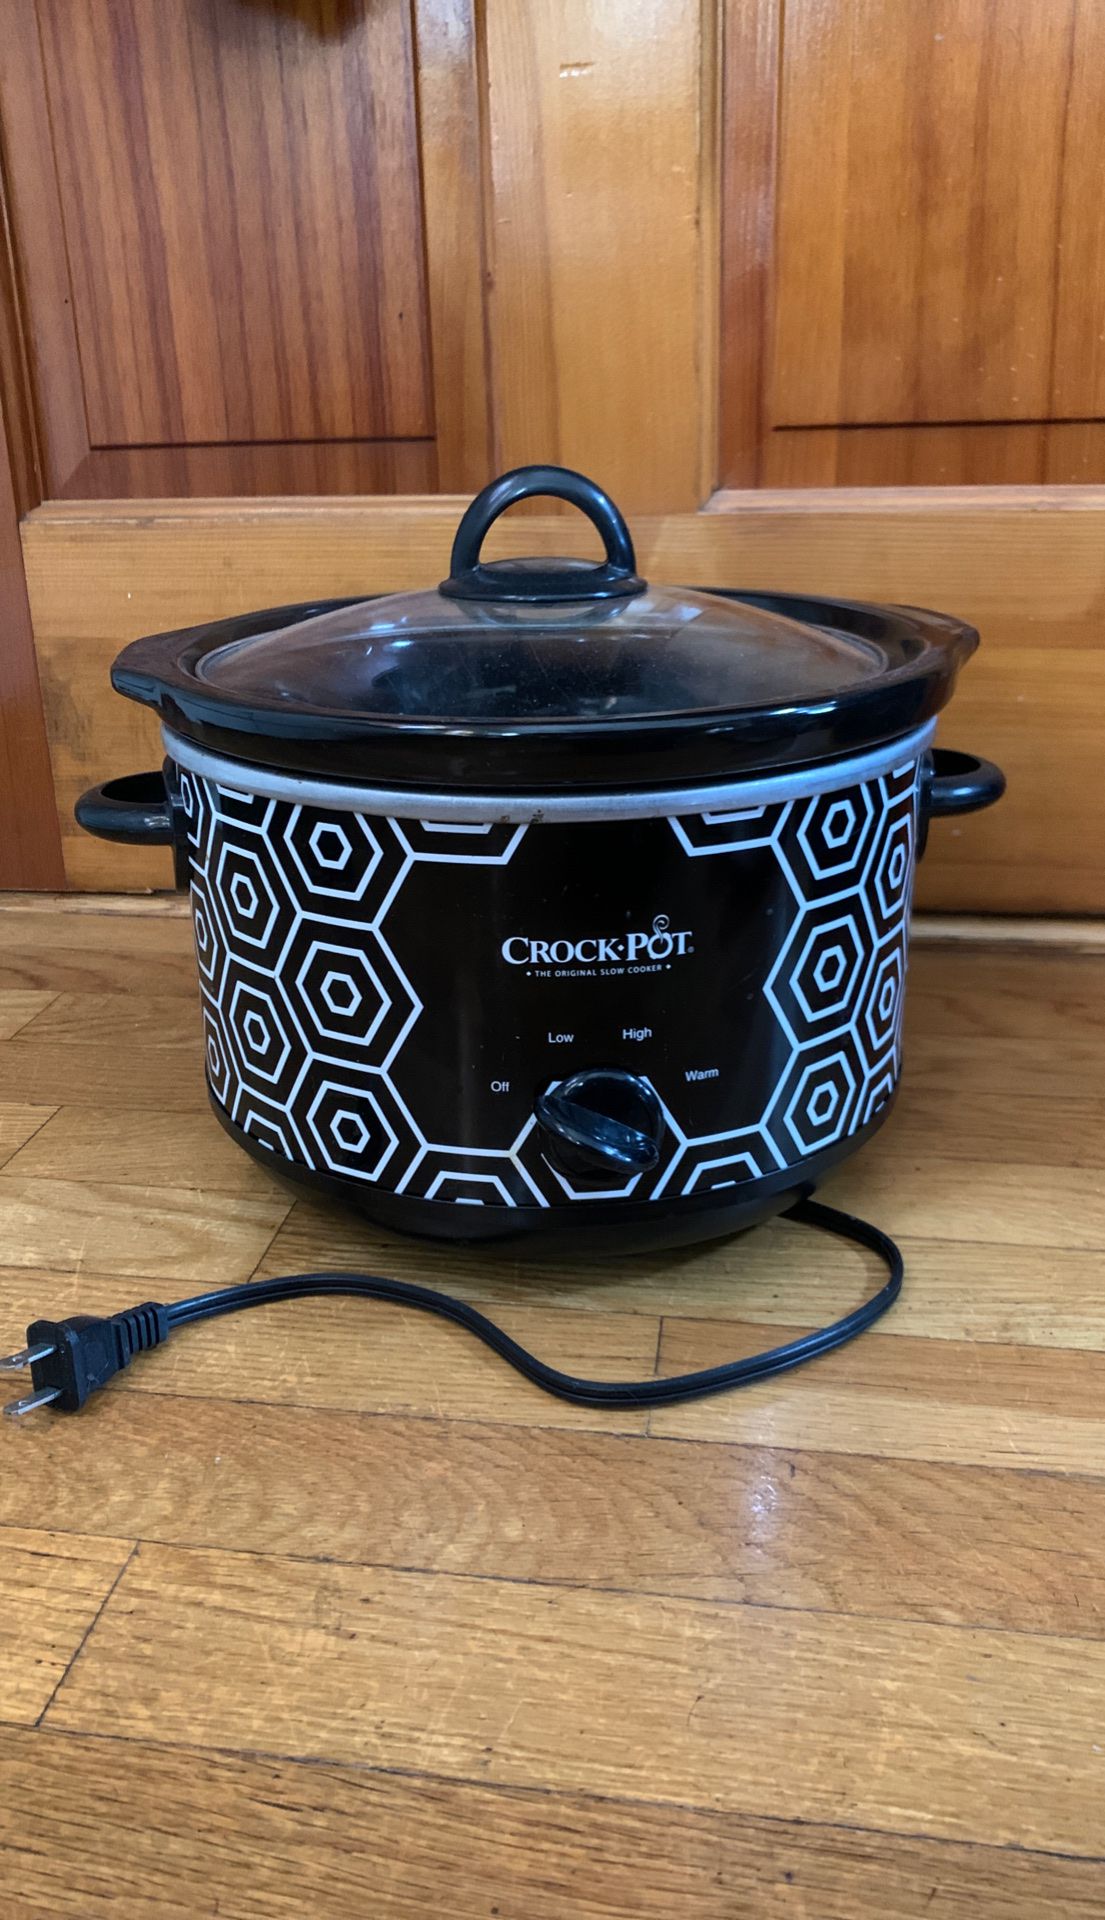 Crock pot slow cooker 4.5 qt w/ cookbook